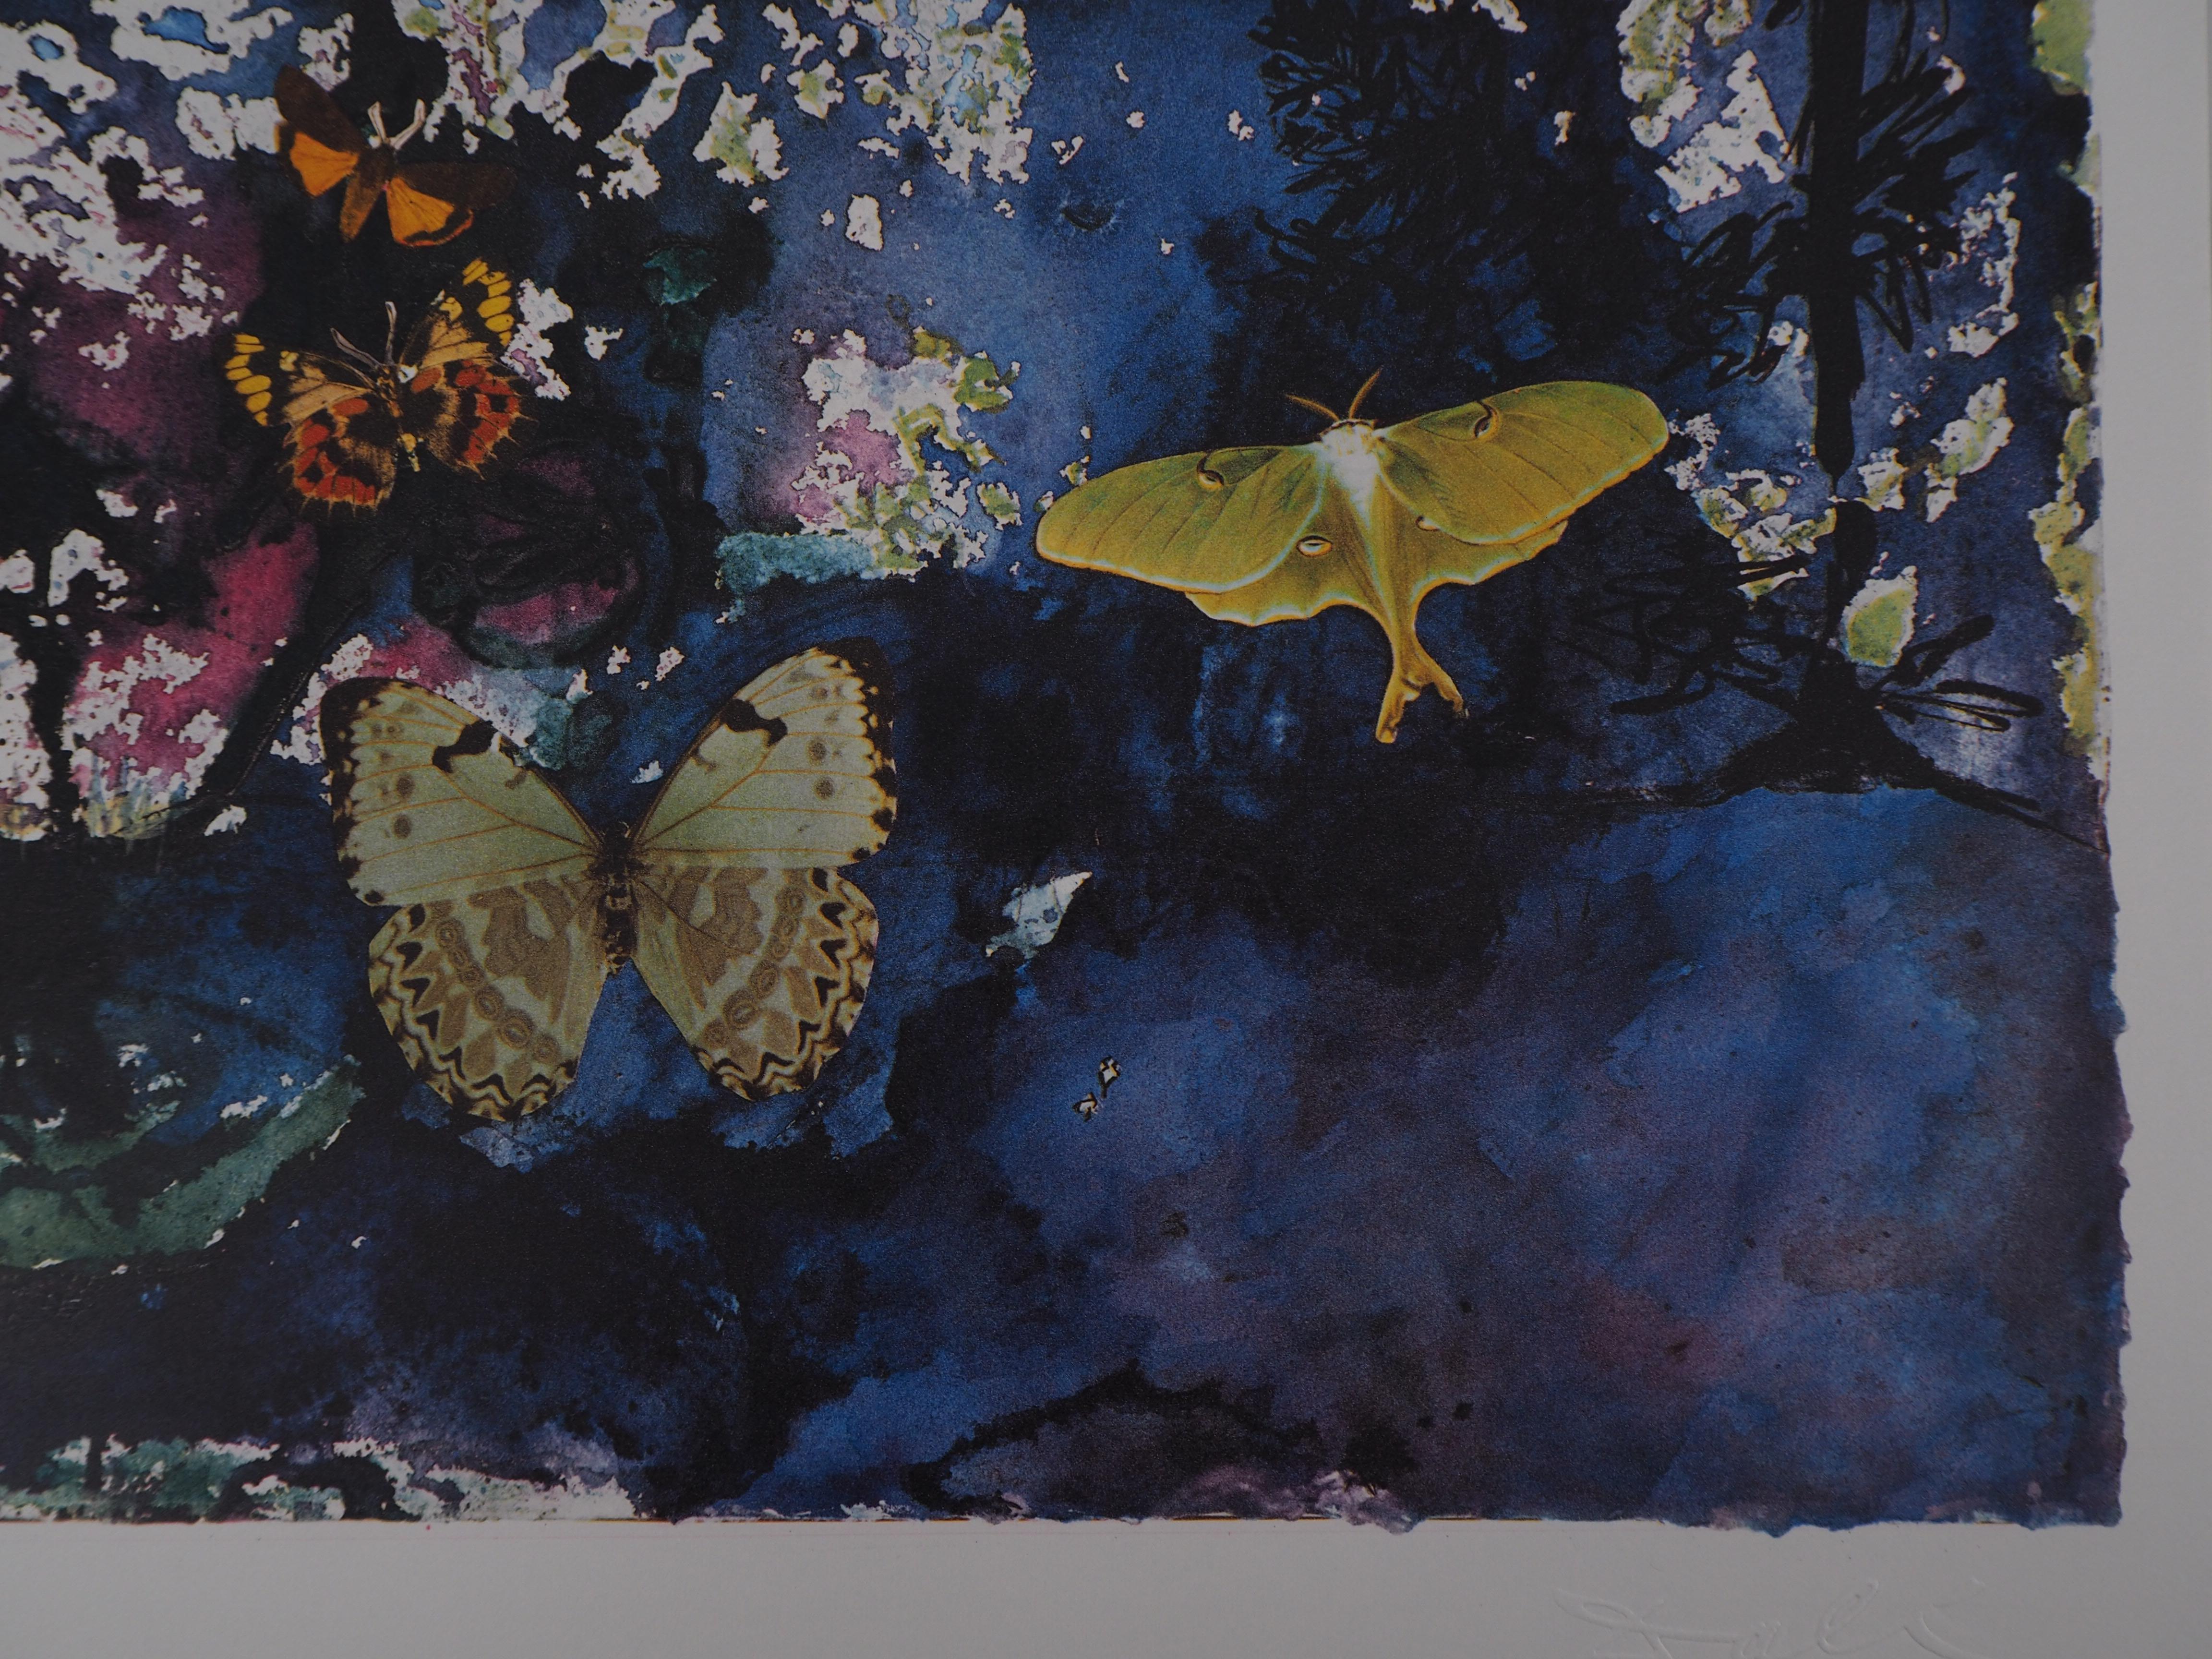 Butterfly suite : Les Alpes - heliogravure - 1969 (Field #69-2 C) - Black Landscape Print by Salvador Dalí